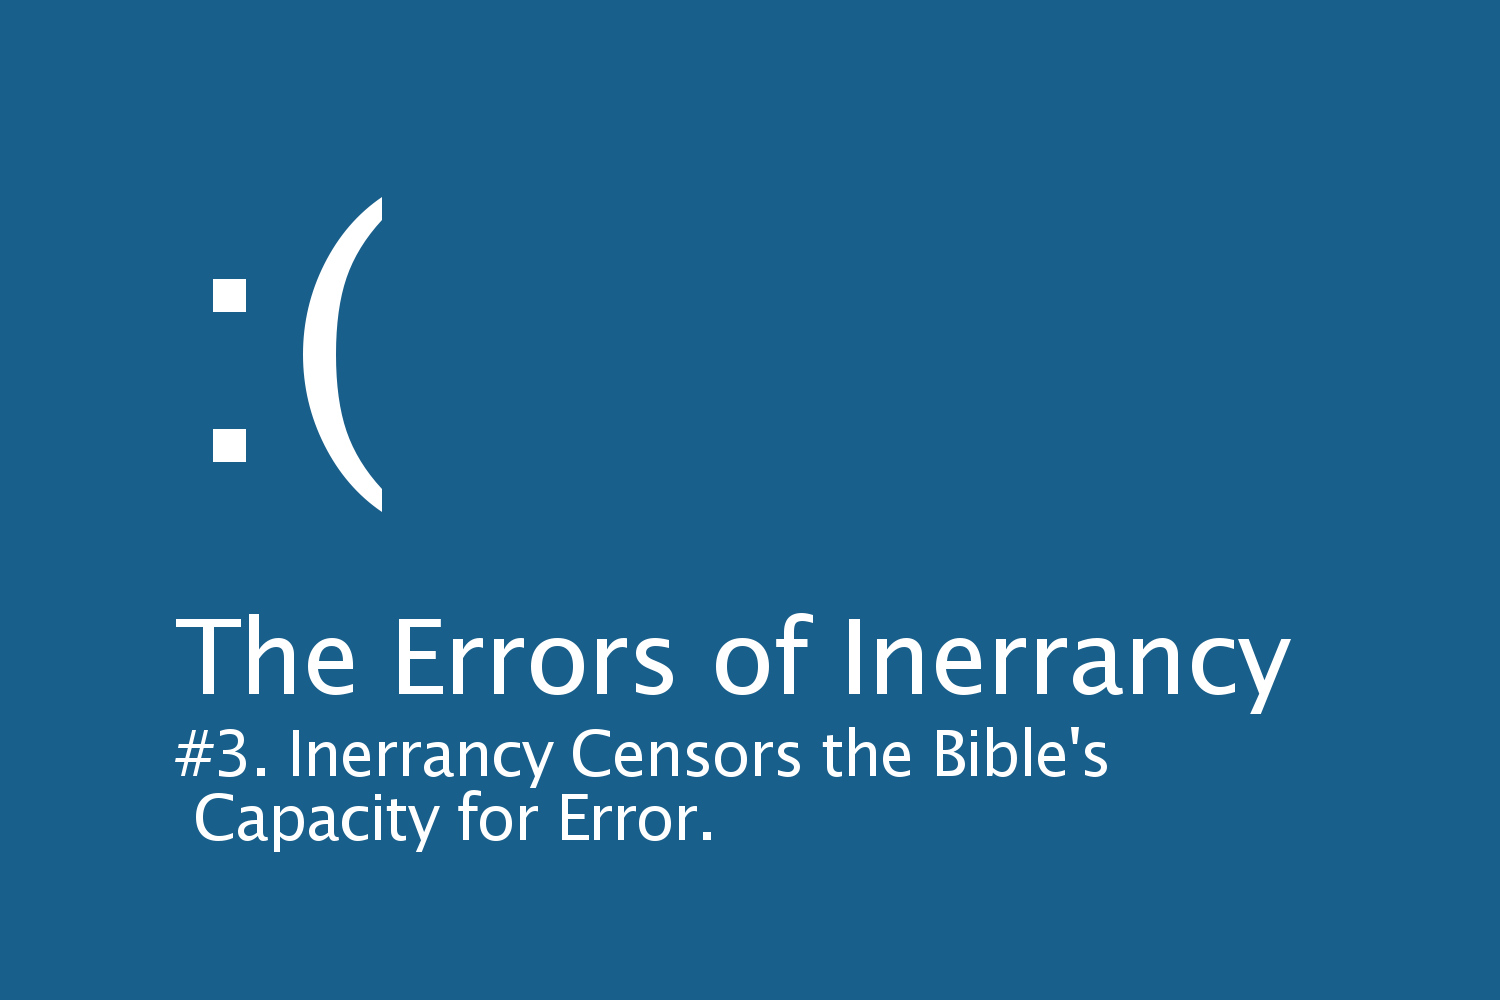 The Errors of Inerrancy: #3 Inerrancy Censors the Bible's Capacity for Error